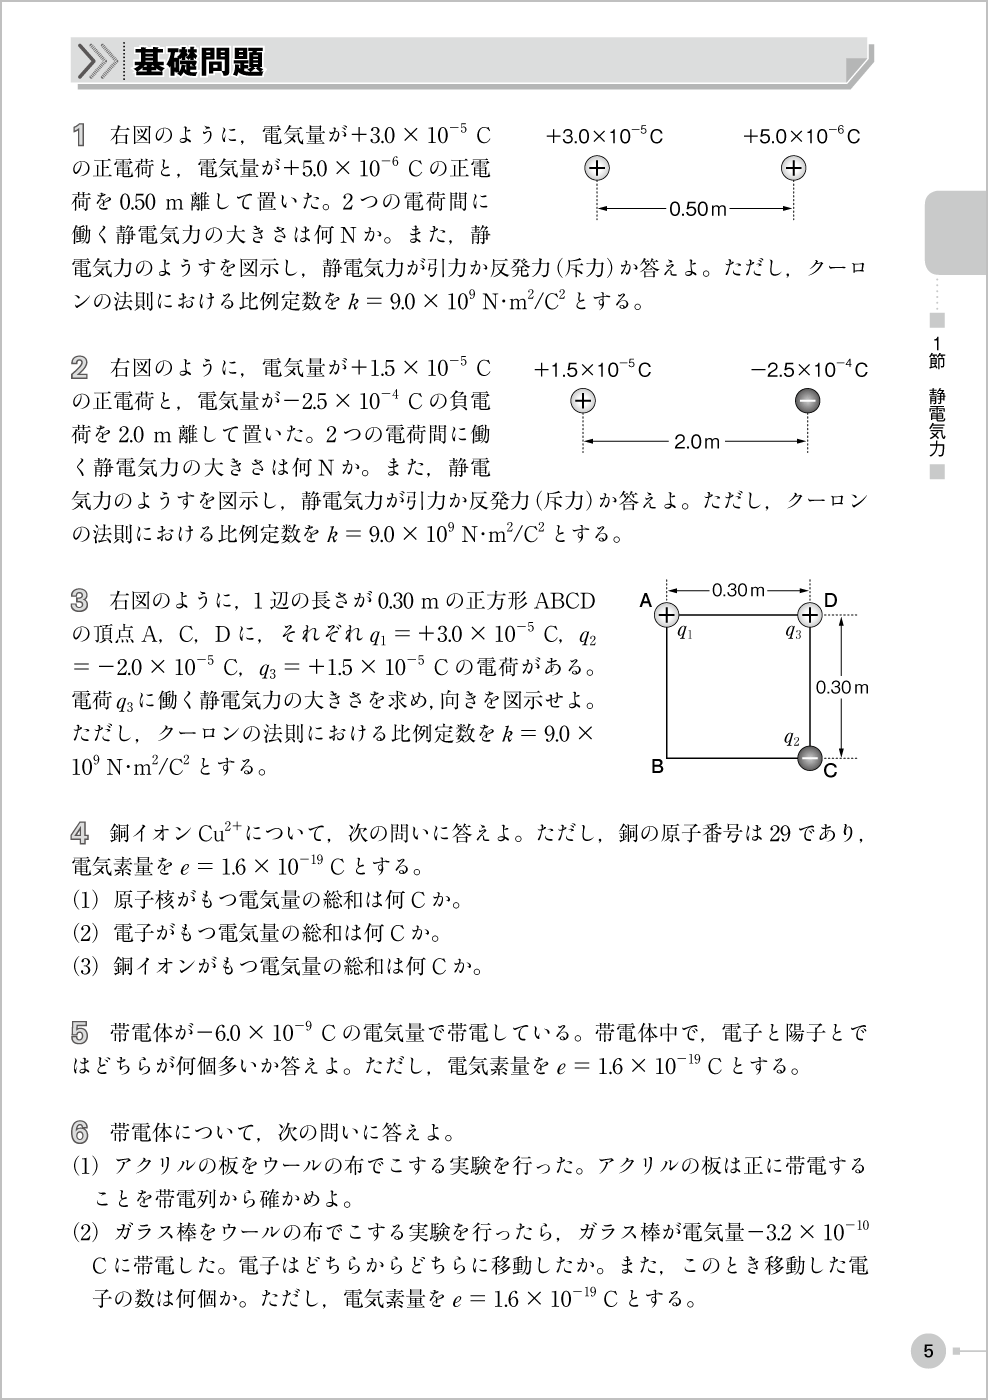 電磁気・原子問題集 p.5